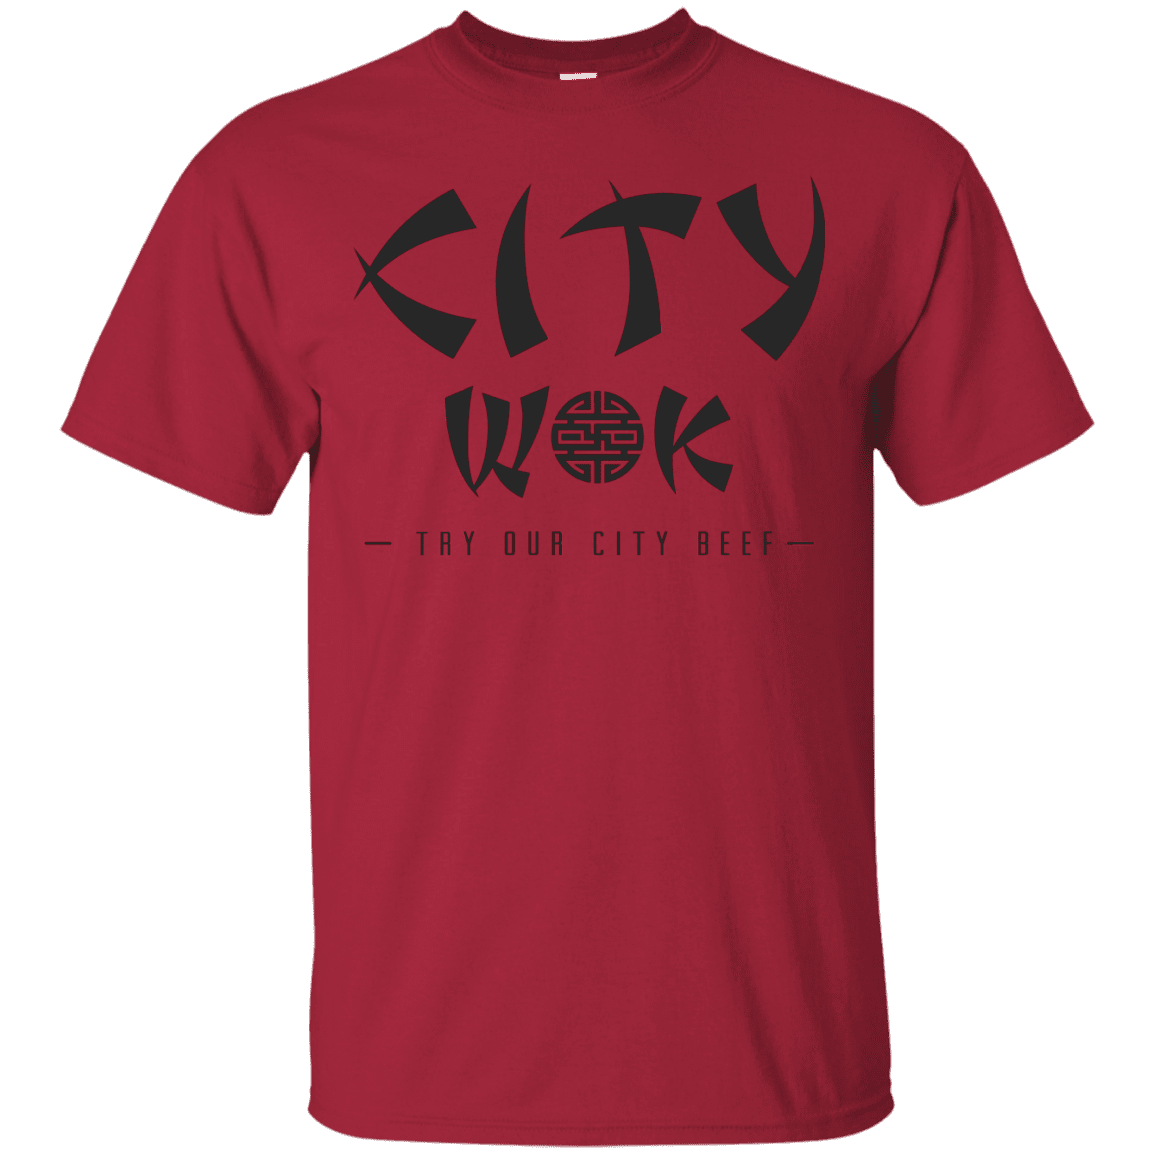 T-Shirts Cardinal / S City Wok T-Shirt